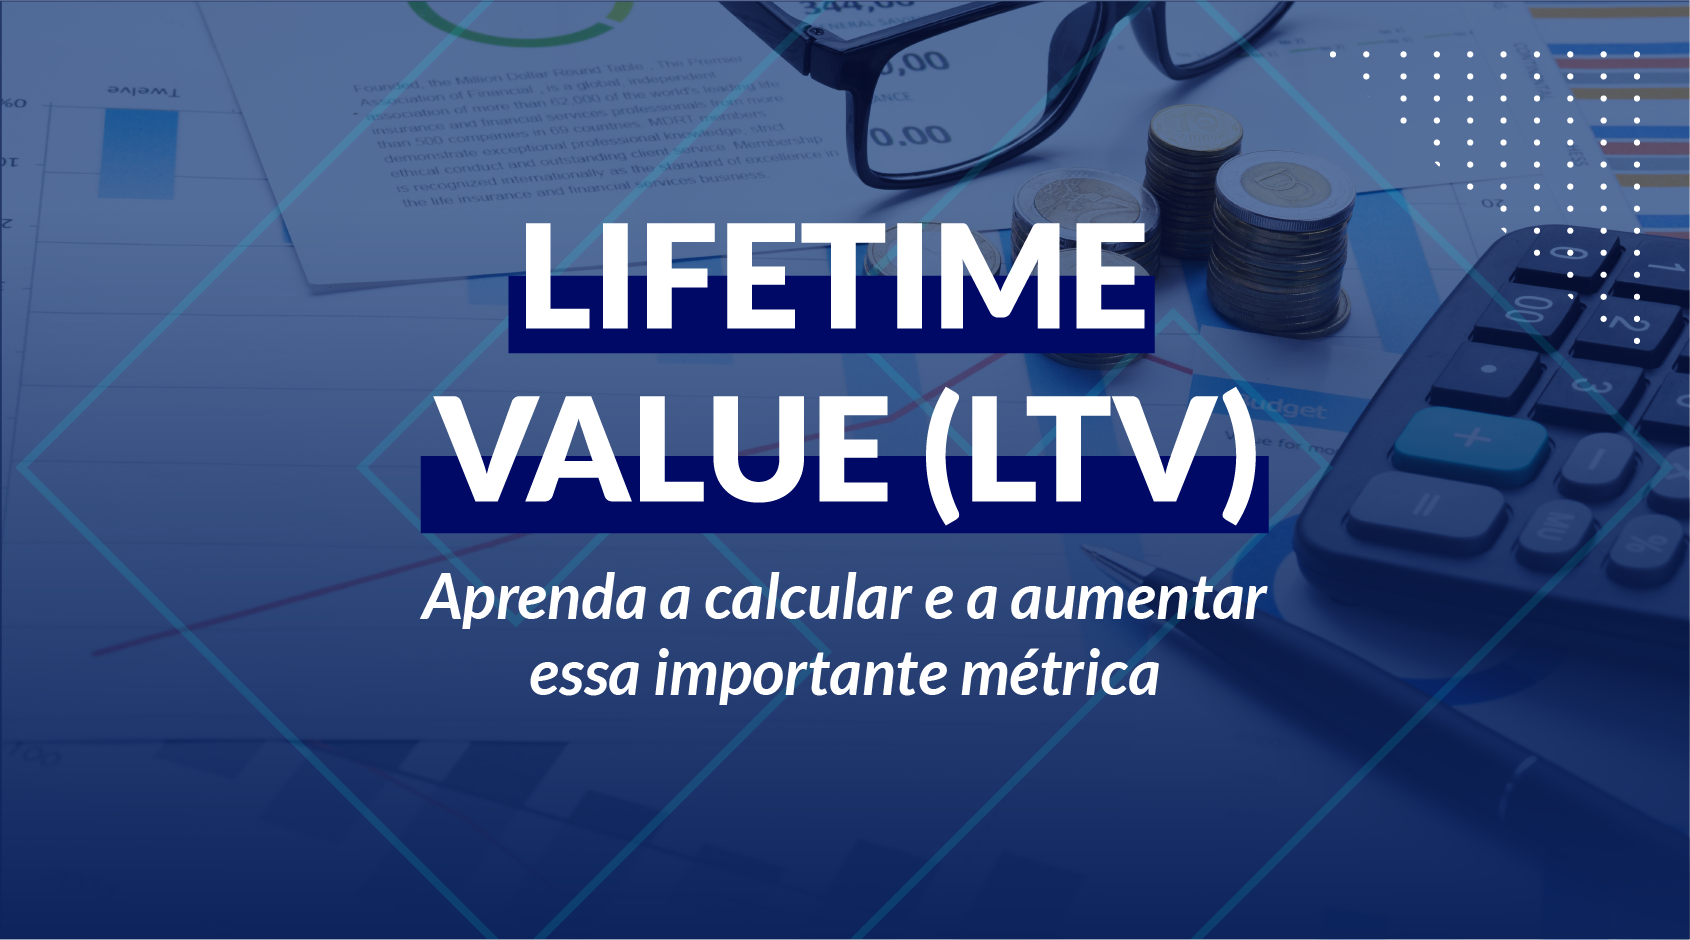  Lifetime Value (LTV): Aprenda a calcular e a aumentar essa importante métrica